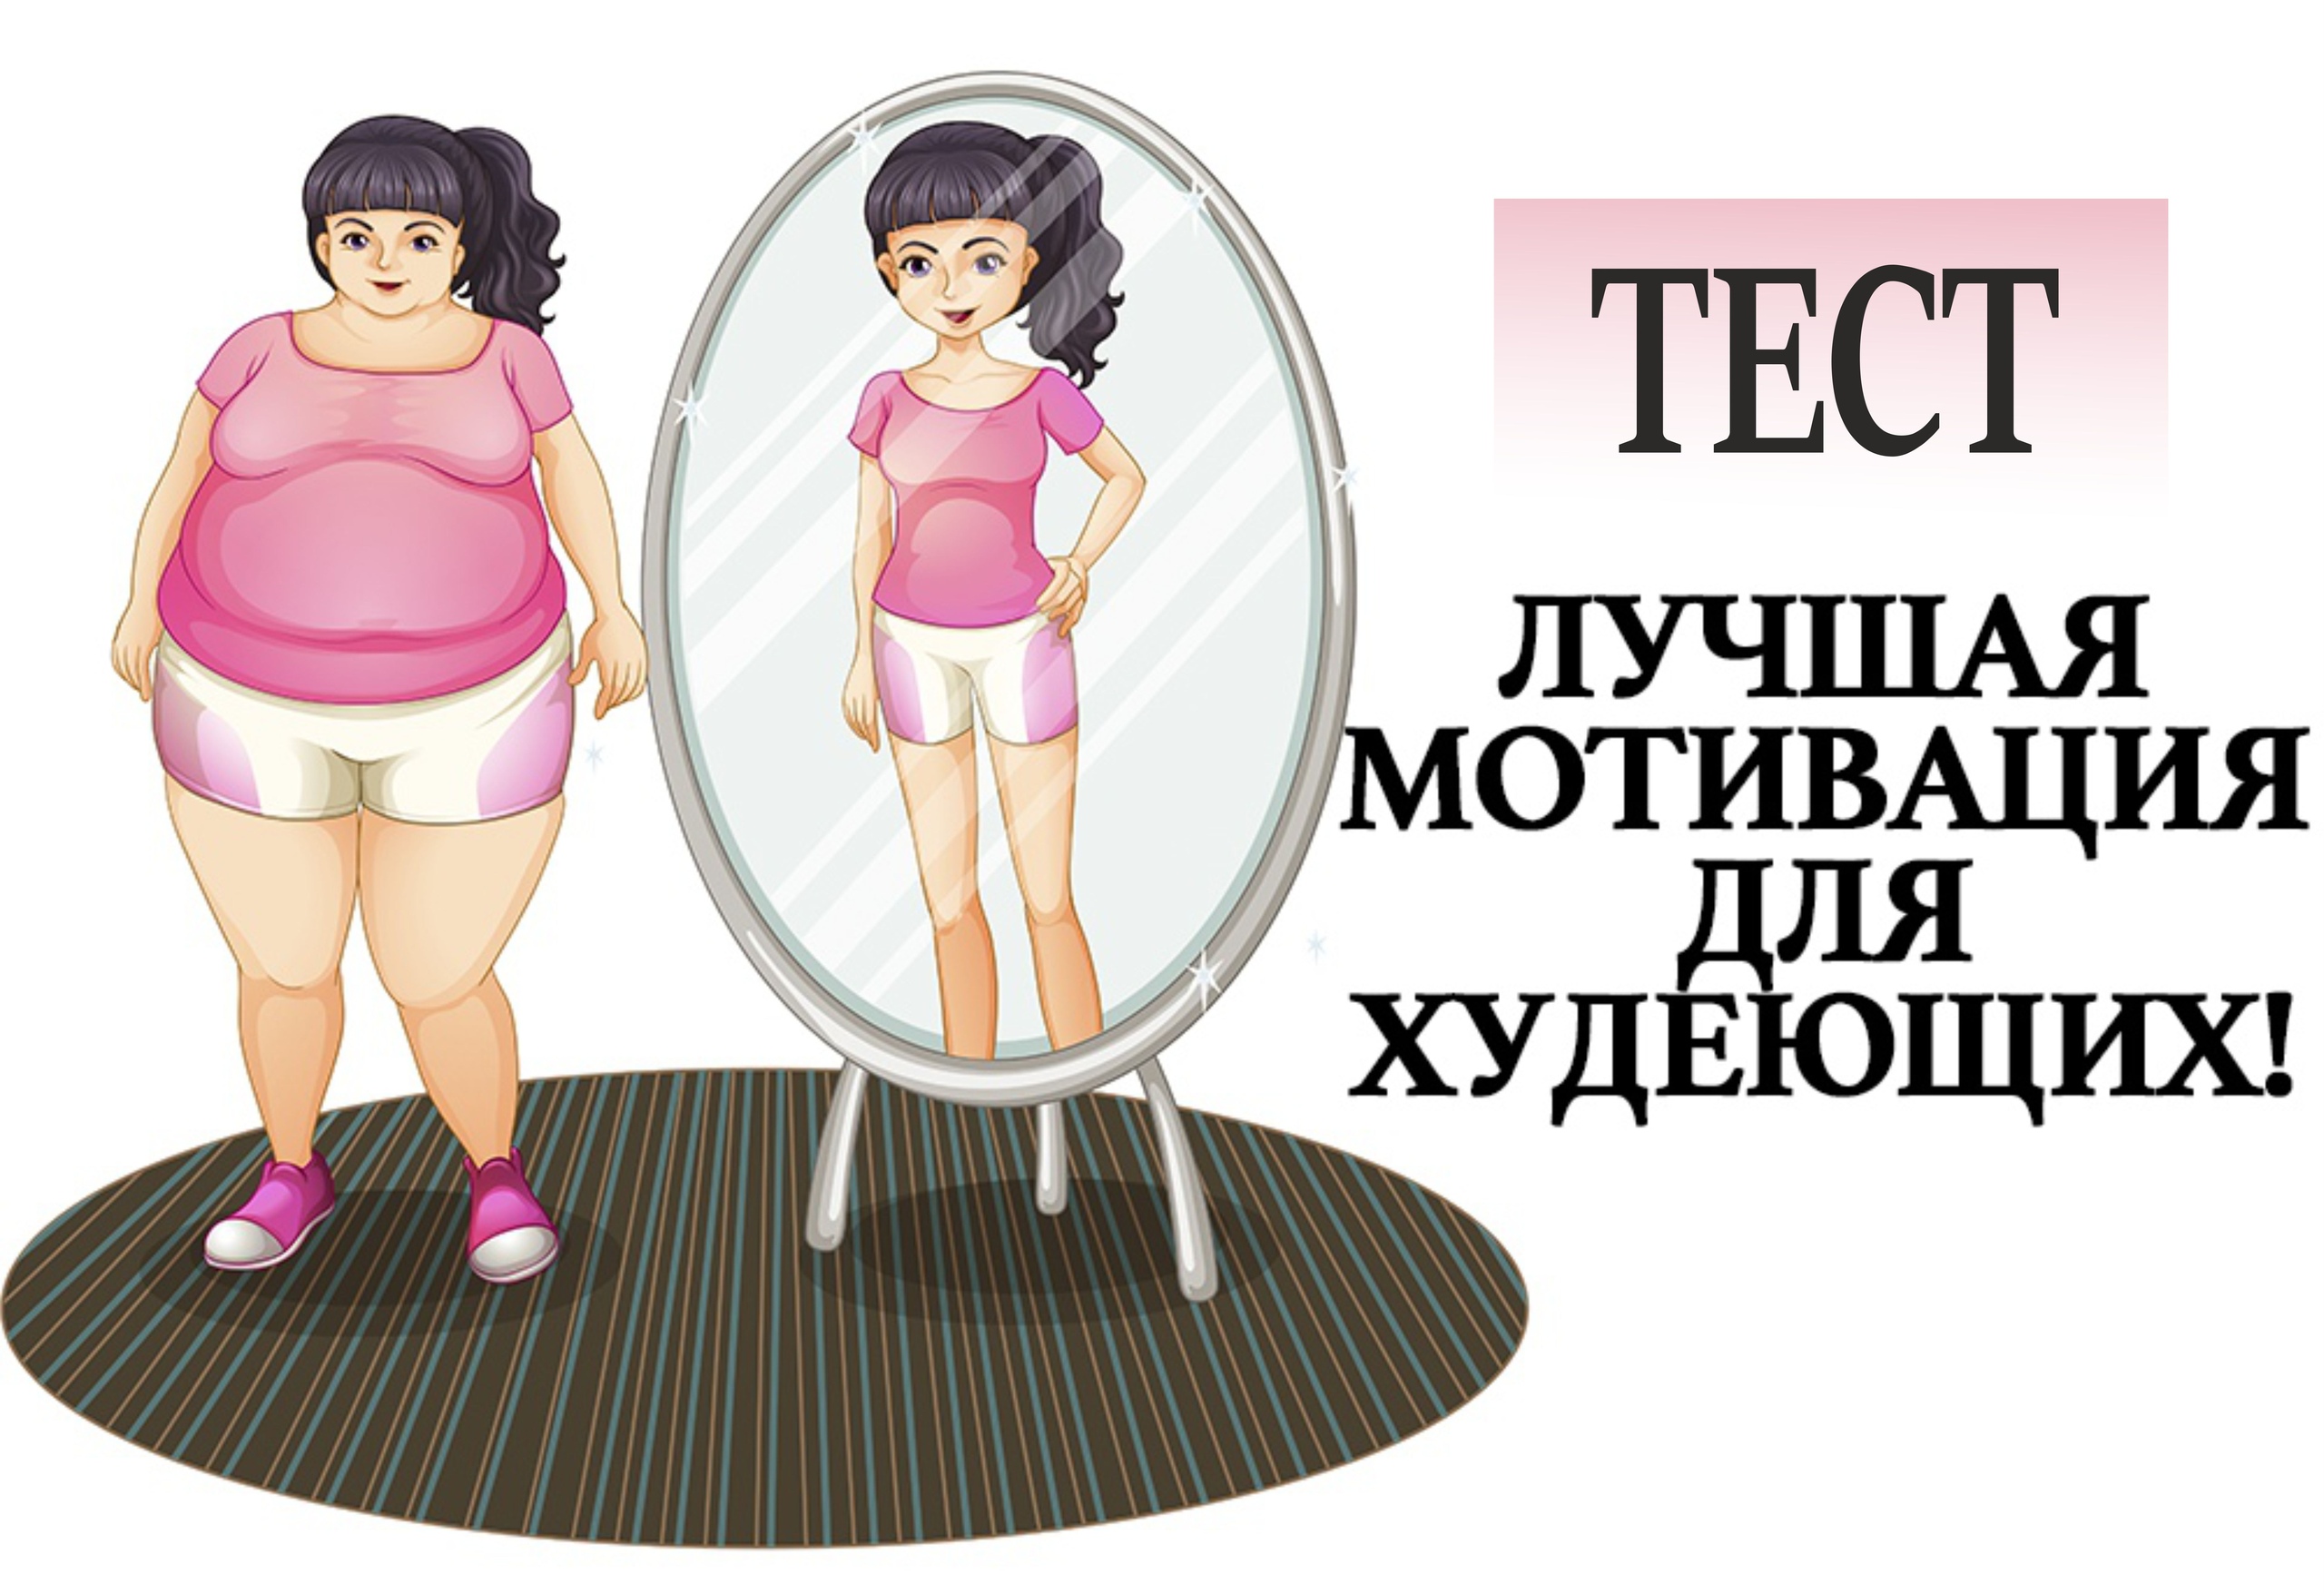 Фото стройных девушек для мотивации к похудению